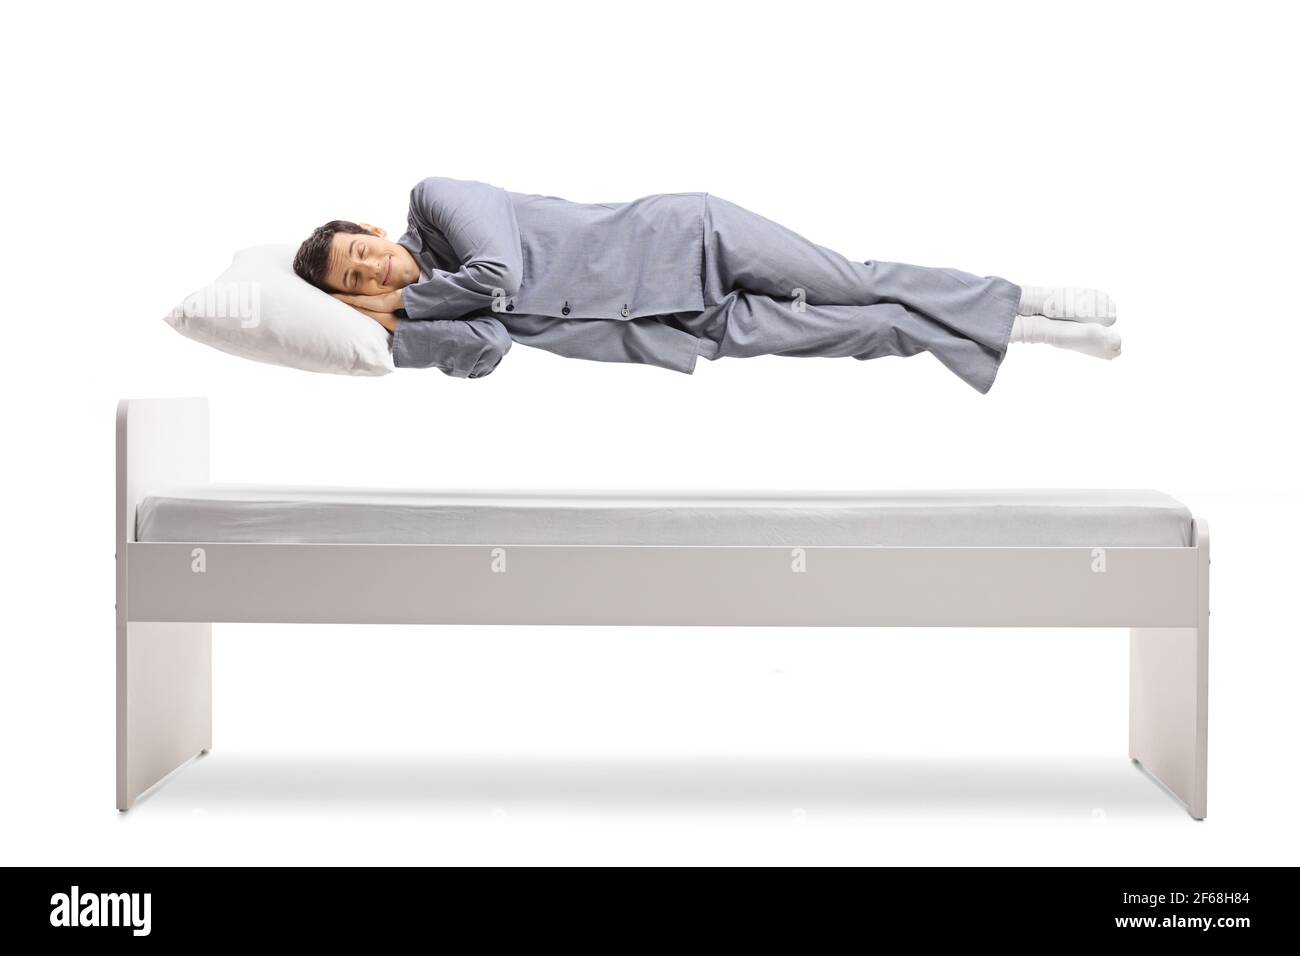 Uomo in pigiama che dorme e galleggia sopra un letto isolato su sfondo bianco Foto Stock